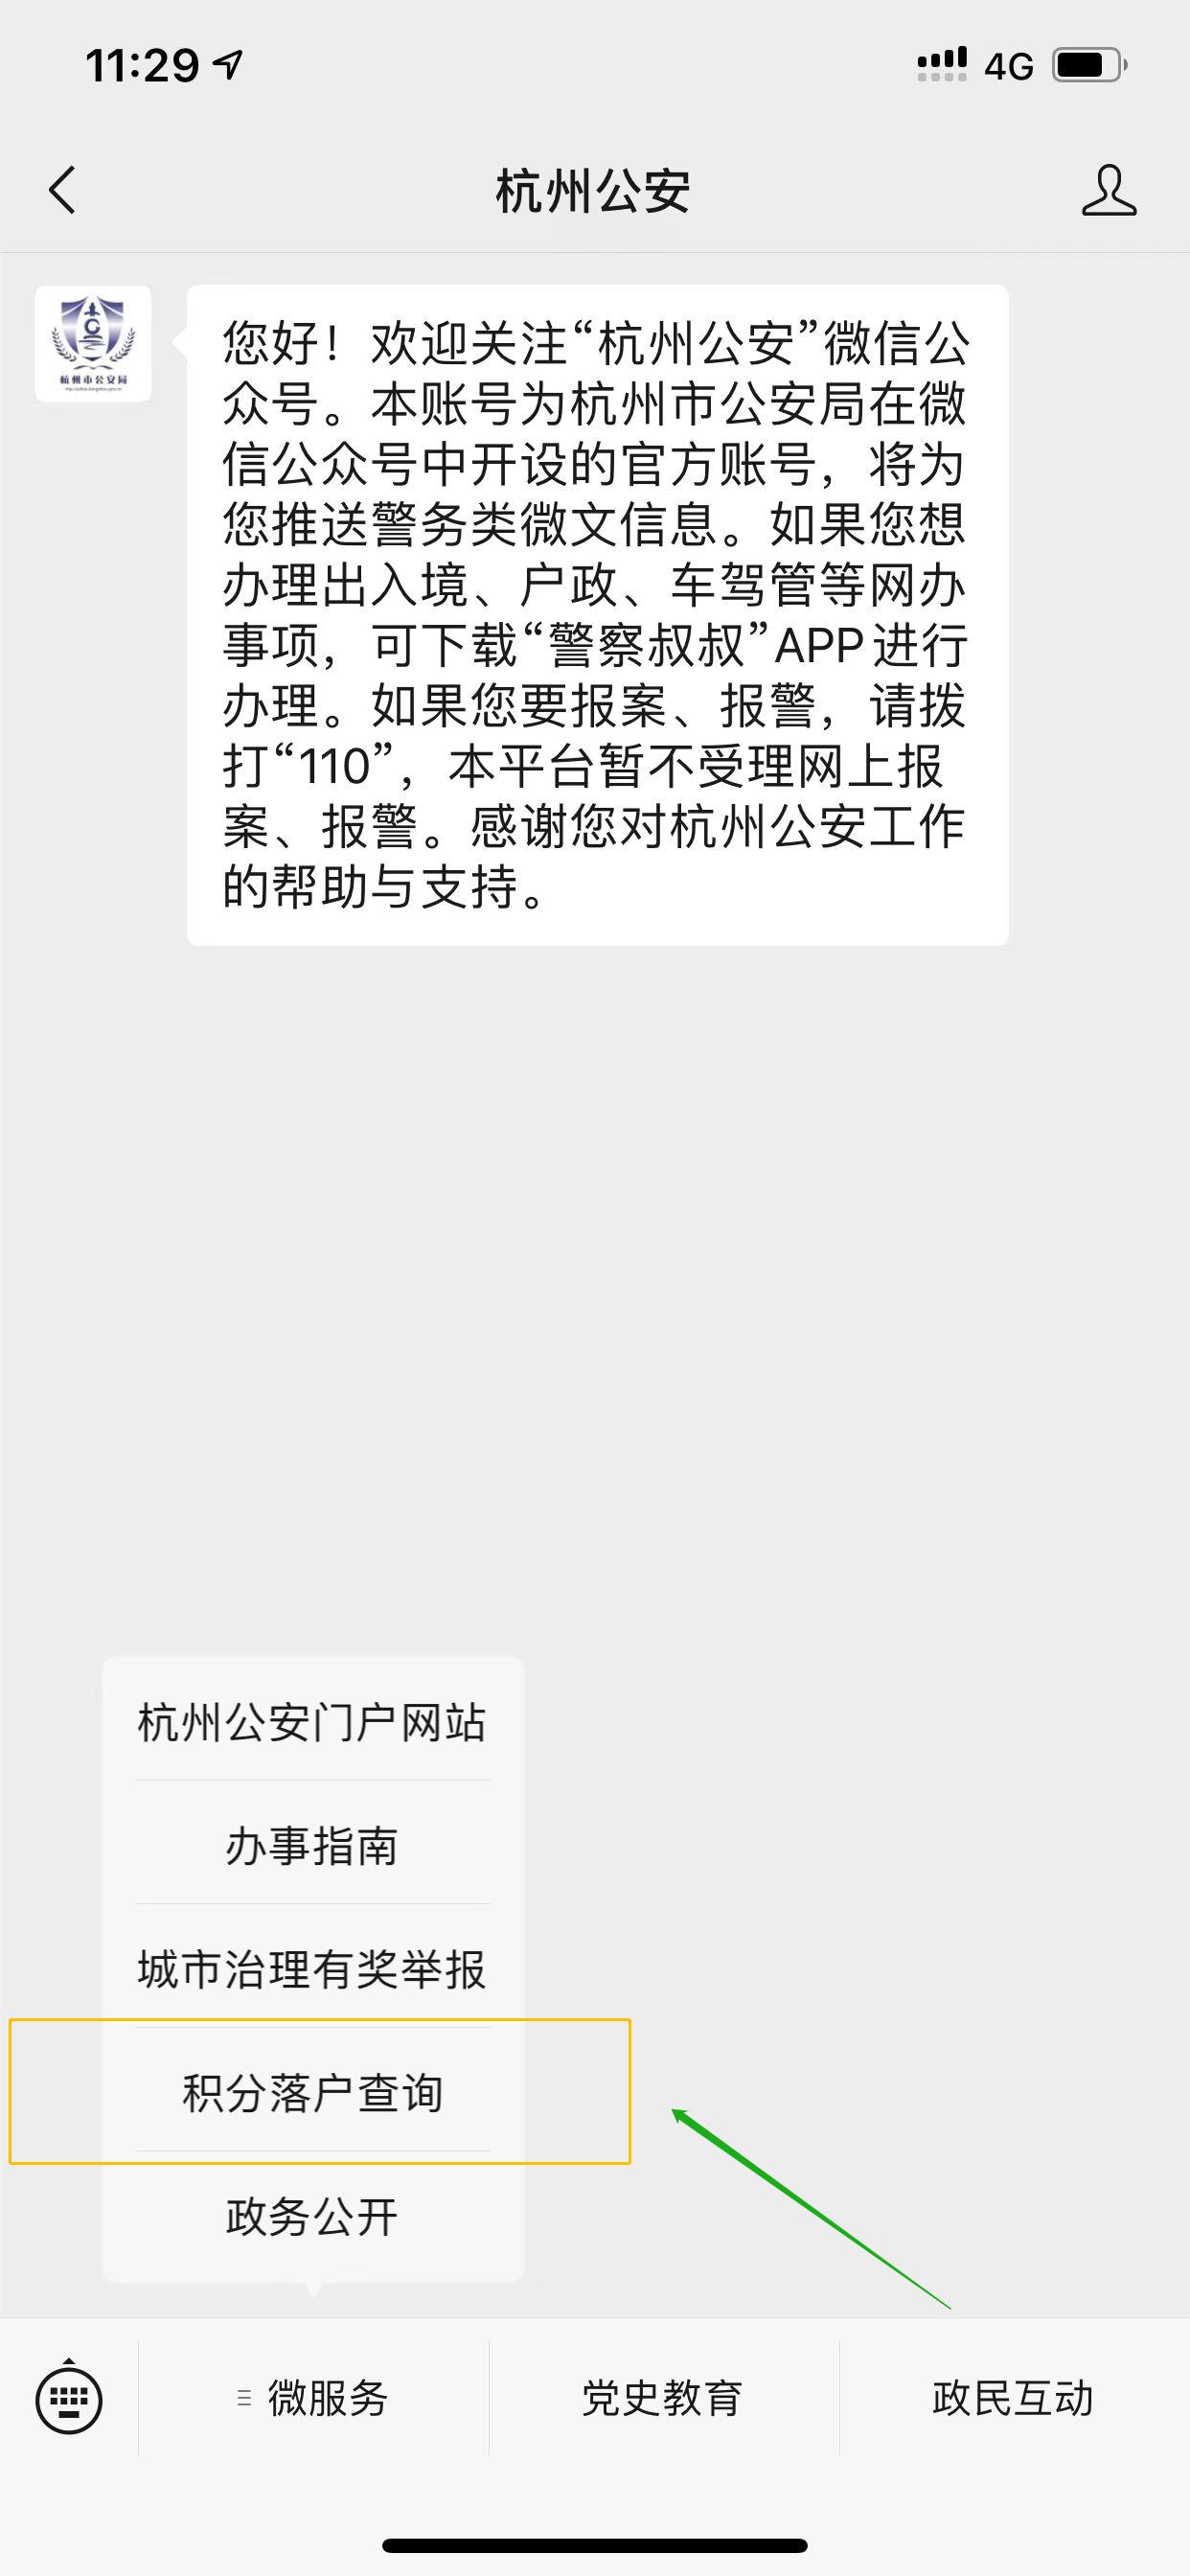 关于杭州市积分落户准入通知书及待办事项